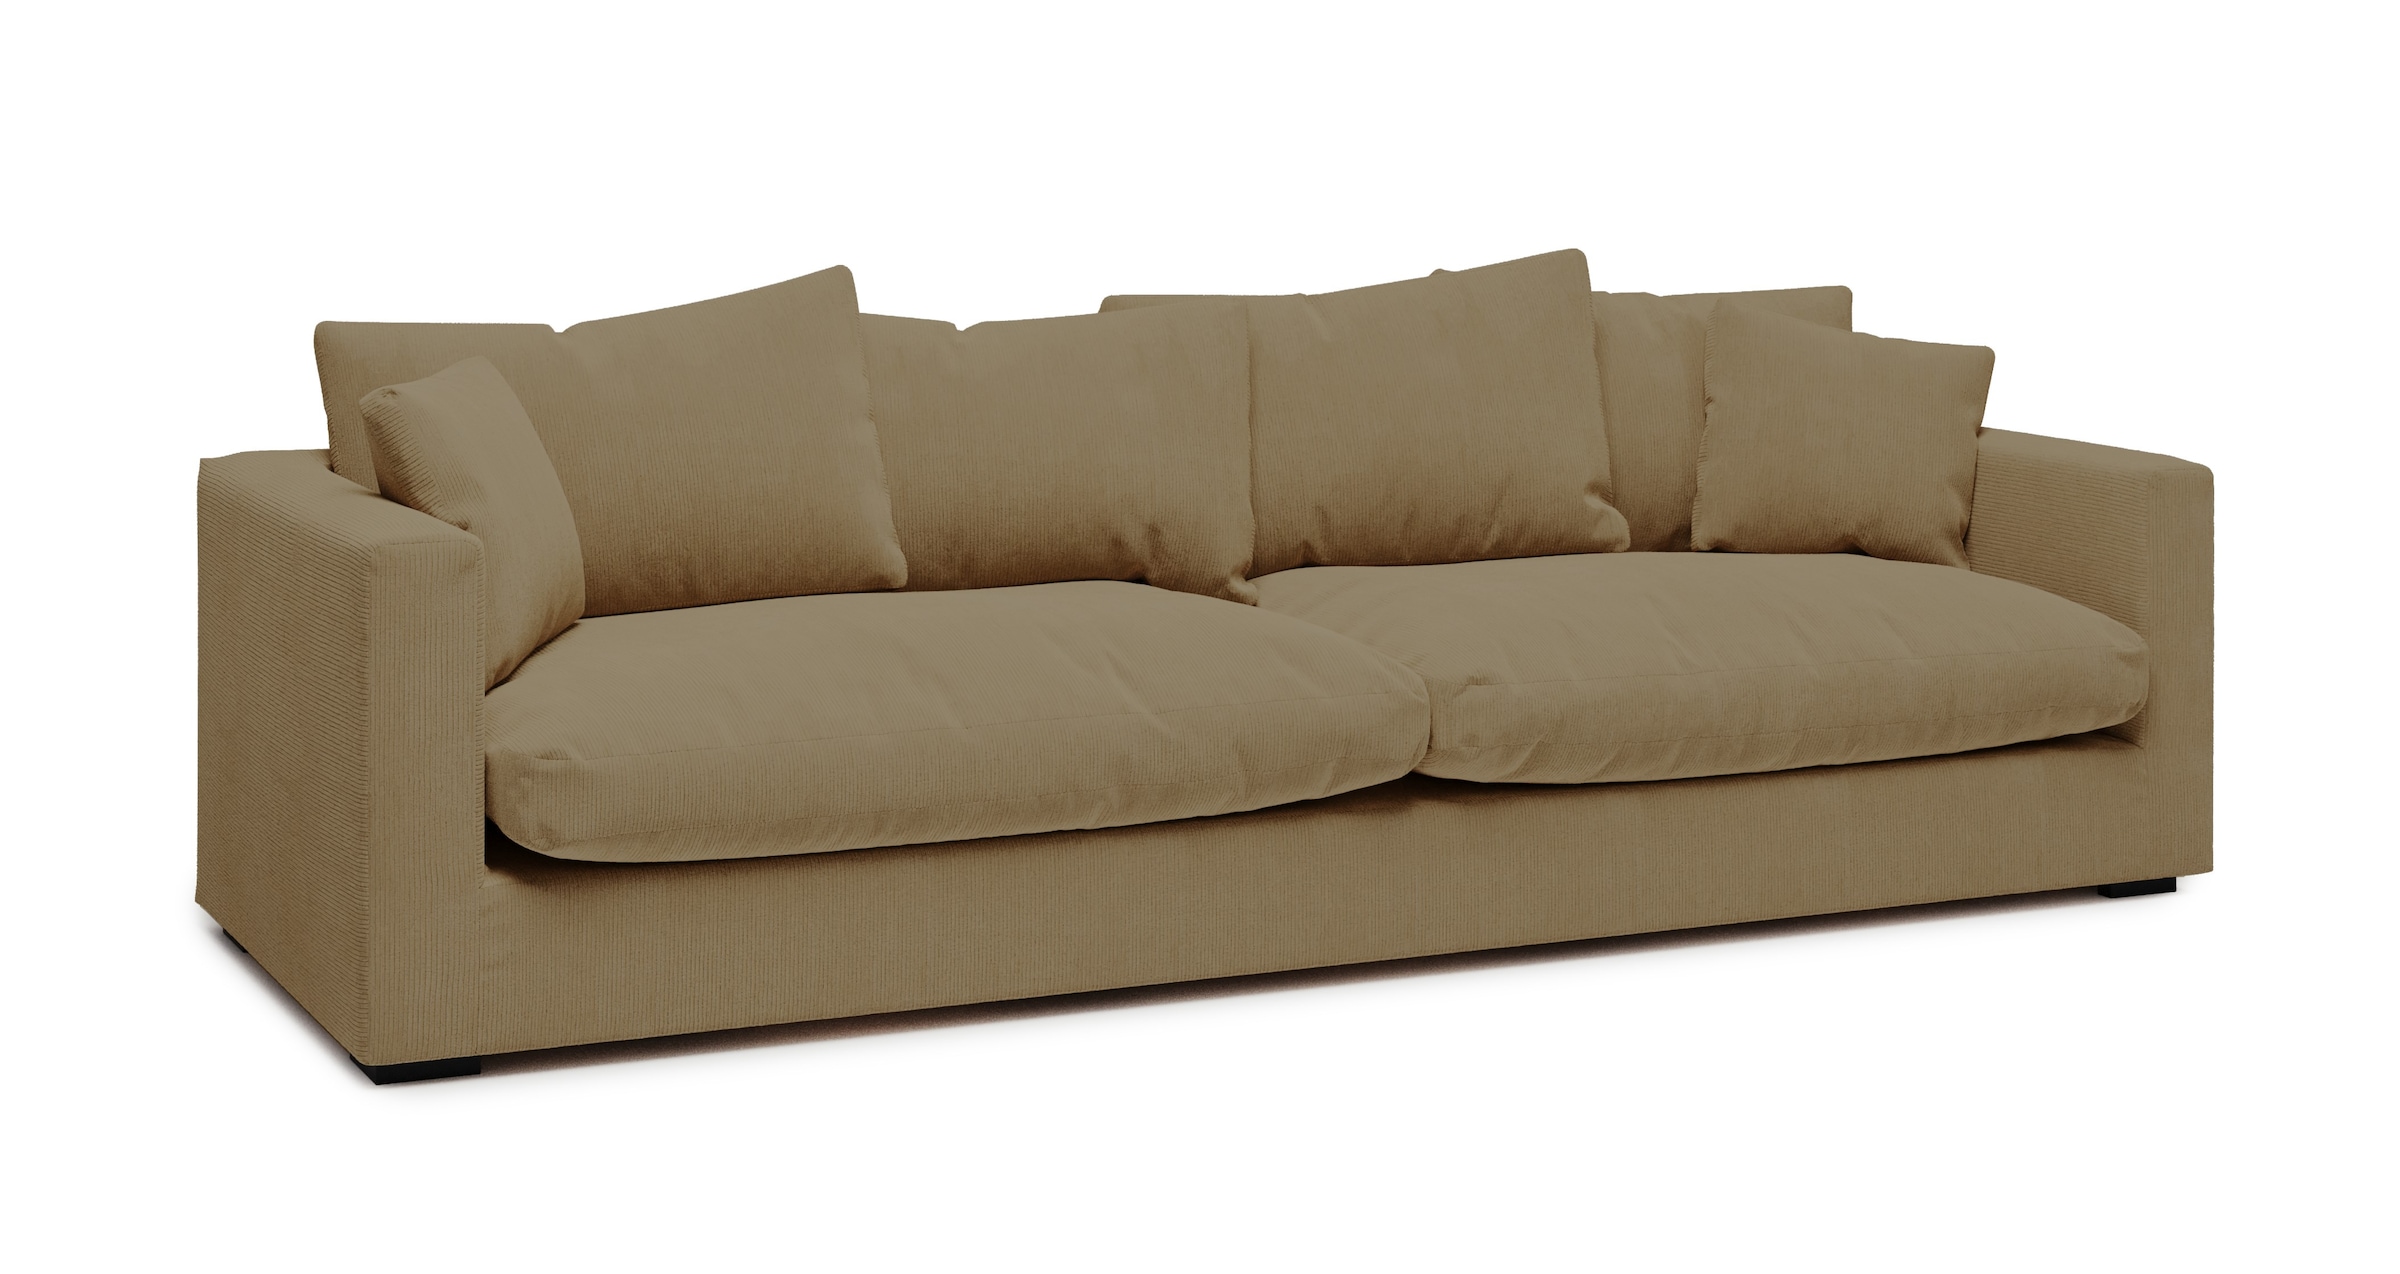 Big-Sofa »Coray«, extra weich und kuschelig, Füllung mit Federn und Daunen